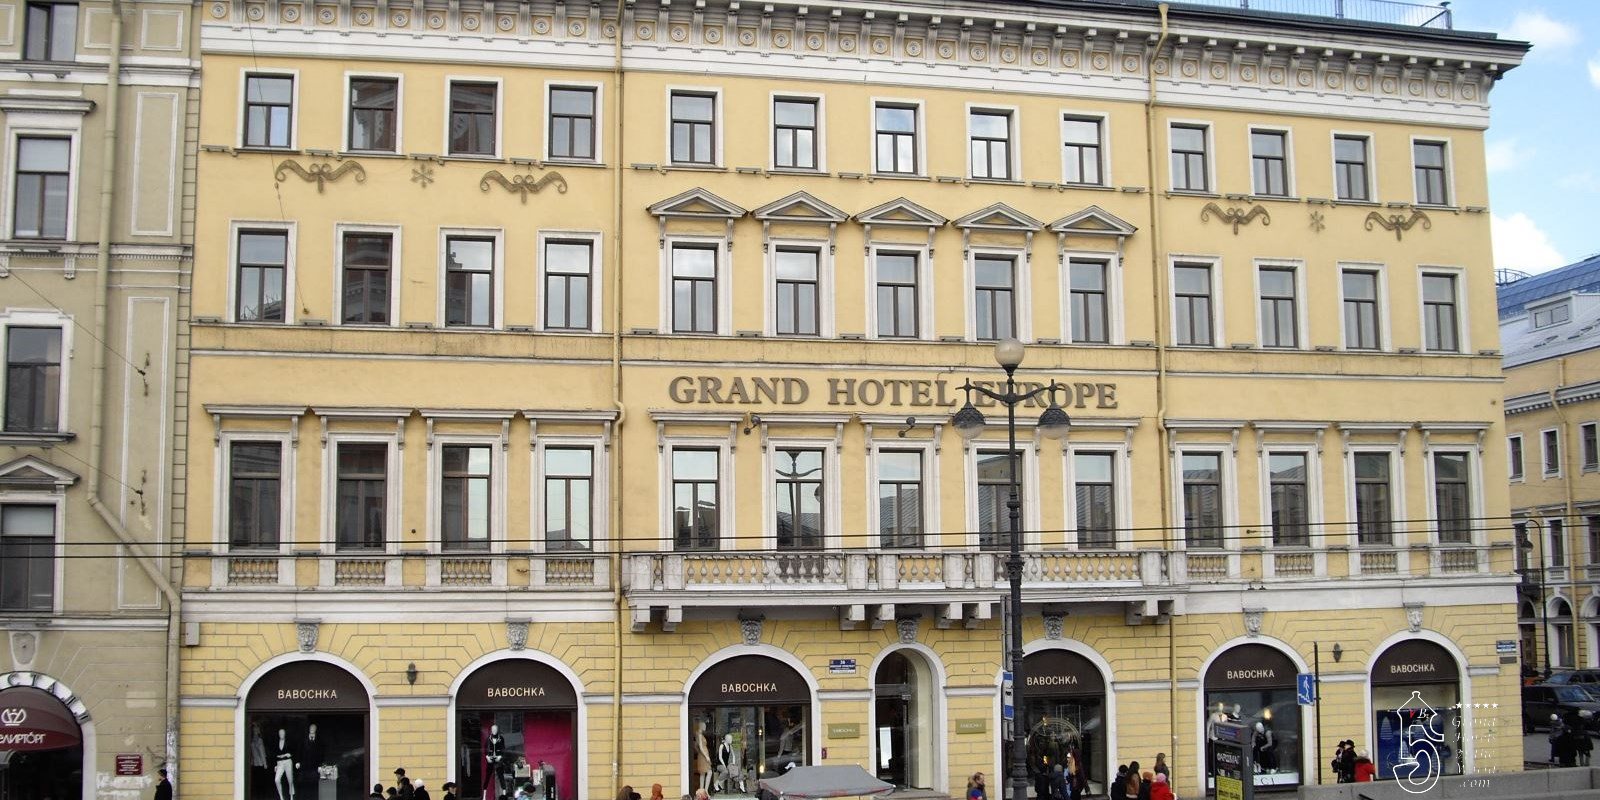 Grand Hotel Europe in St Petersburg by Belmond